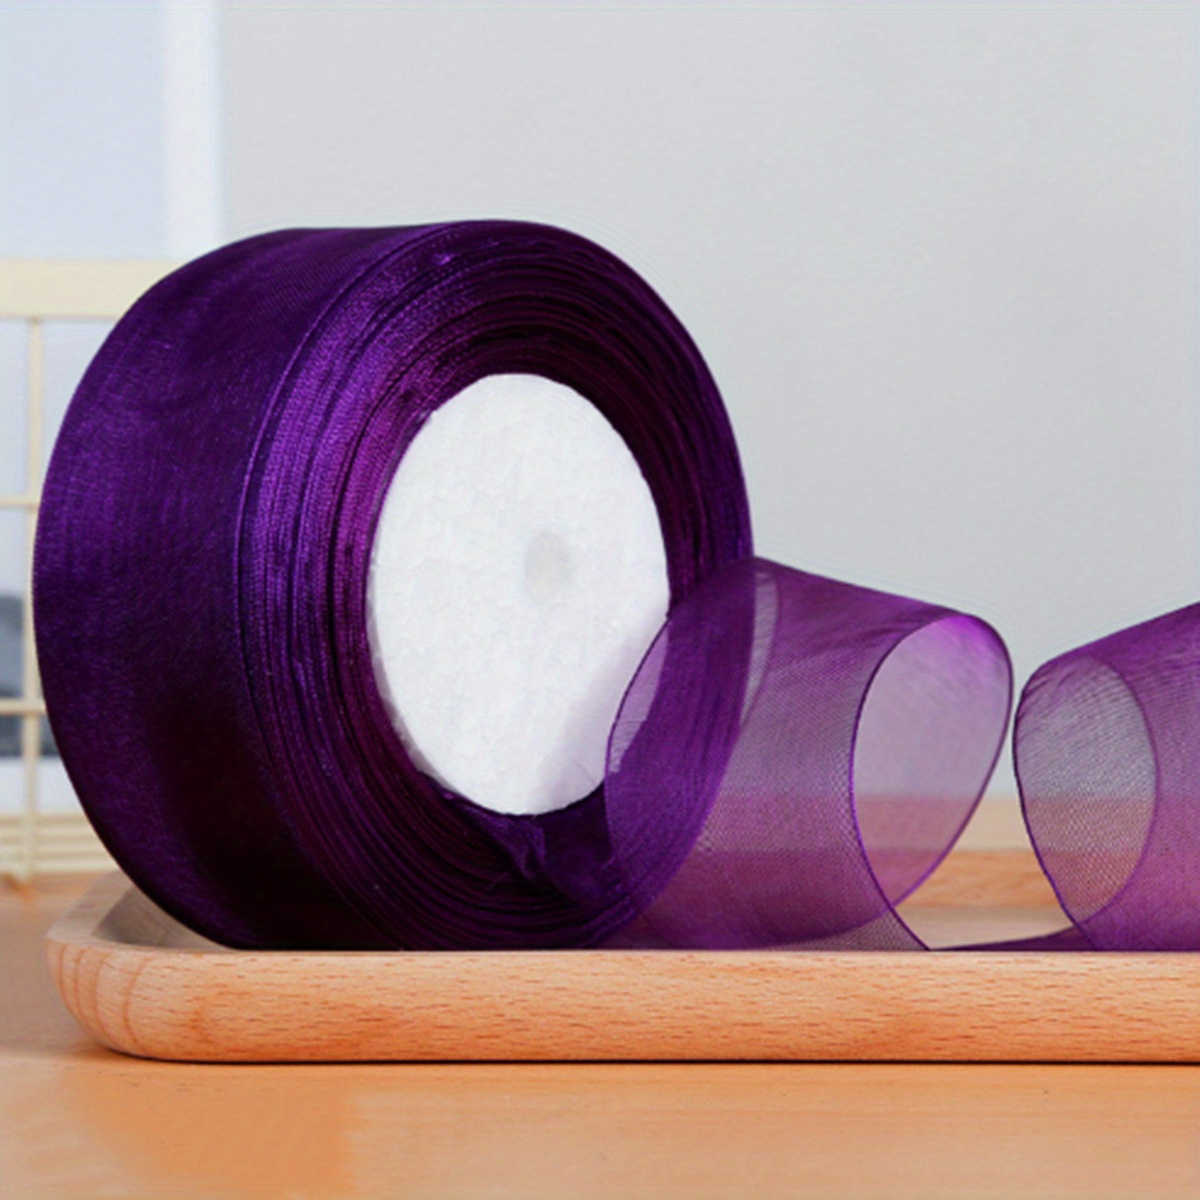 25 Yards, 7/8 DIY Ivory Sheer Organza Ribbon With Satin Edges